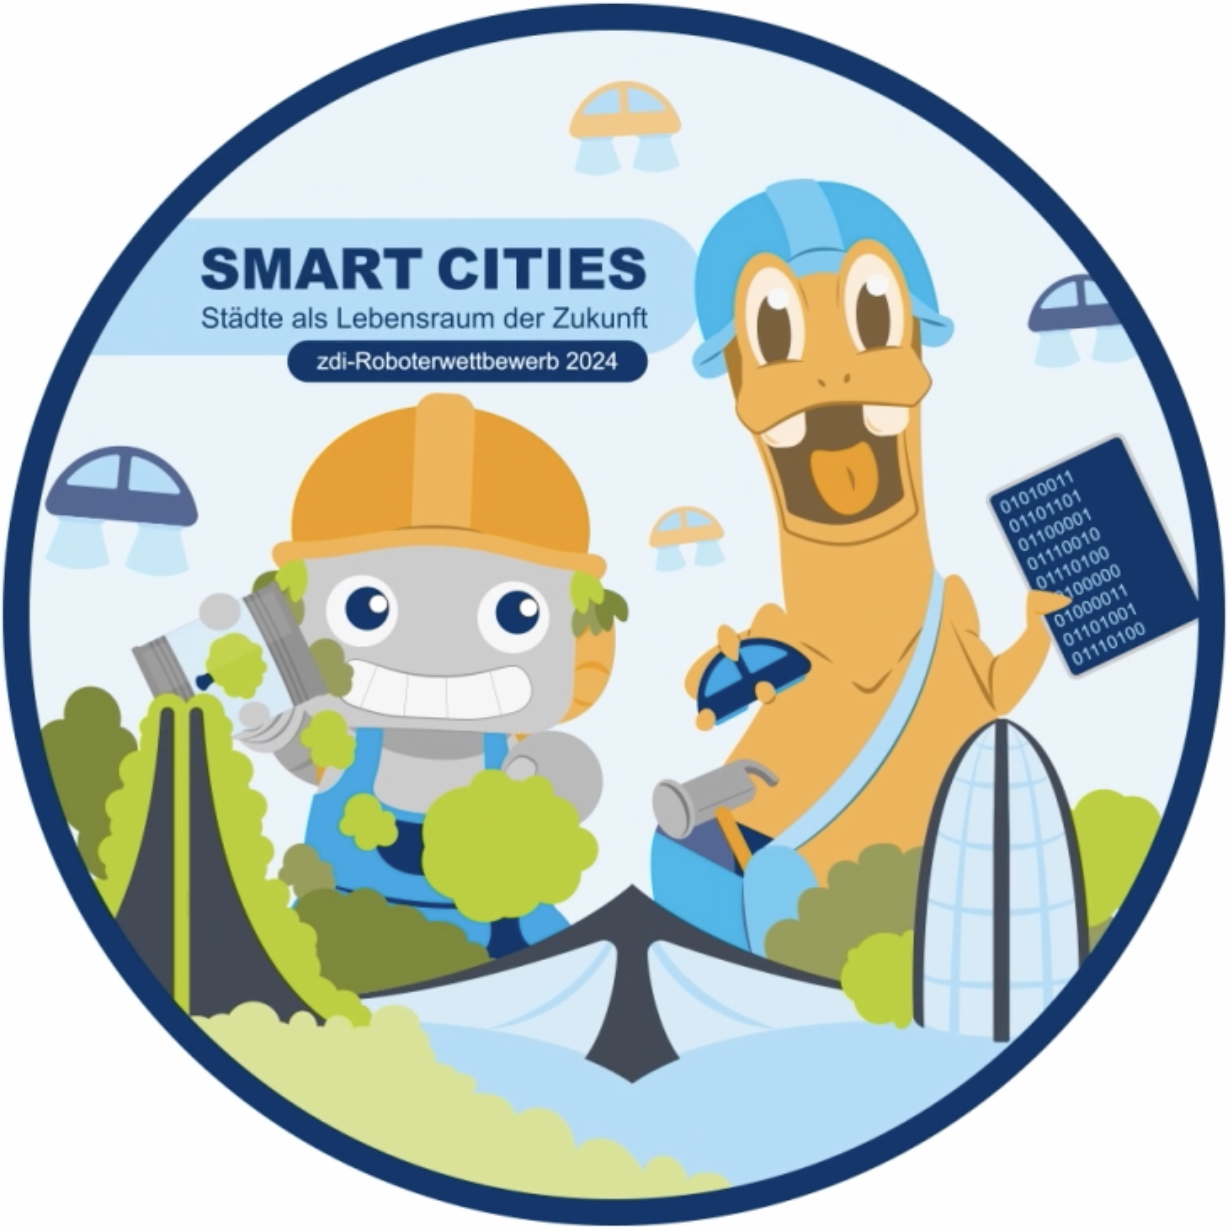 Das Bild zeigt das Logo des zdi-Roboterwettbewerbs 2024 mit dem Motto: Smart Cities - Städte als Lebensraum der Zukunft. Man sieht einen Roboter und einen Dinosaurier mit Schutzhelmen, die zusammen eine futuristische Stadt aufbauen. Im Hintergrund fliegen Autos.